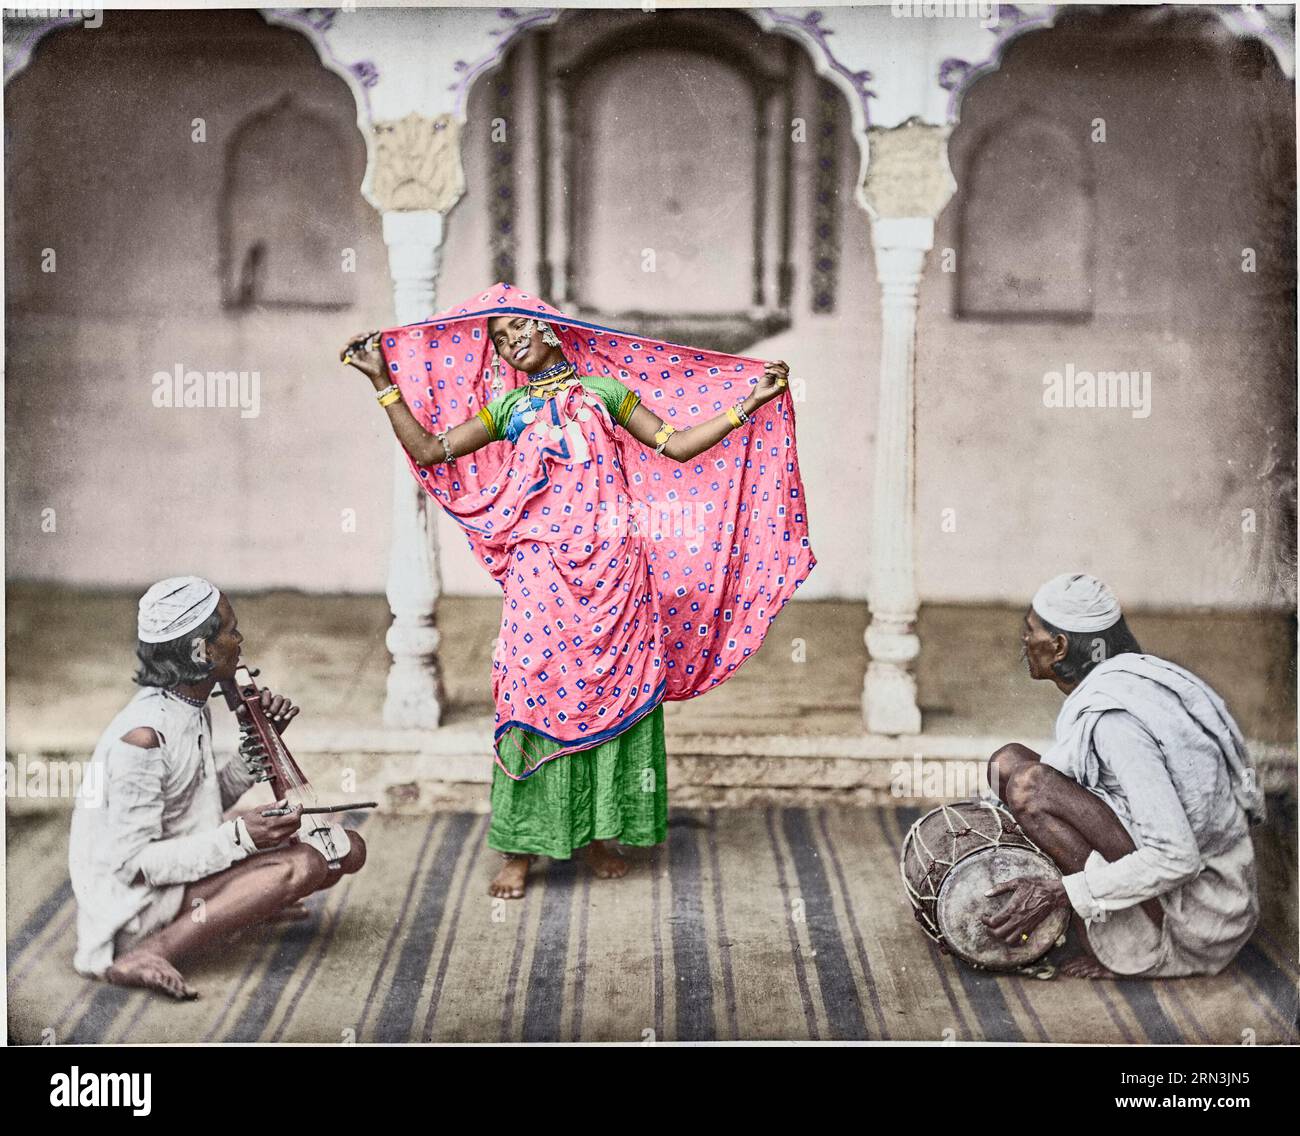 Nautch - Mädchen. 1862. Eine gebürtige Frau posiert mit ihrem Sari und spreizt ihn auf dem Kopf, möglicherweise als Teil einer Tanzvorstellung. Zwei begleitende männliche Mu Stockfoto